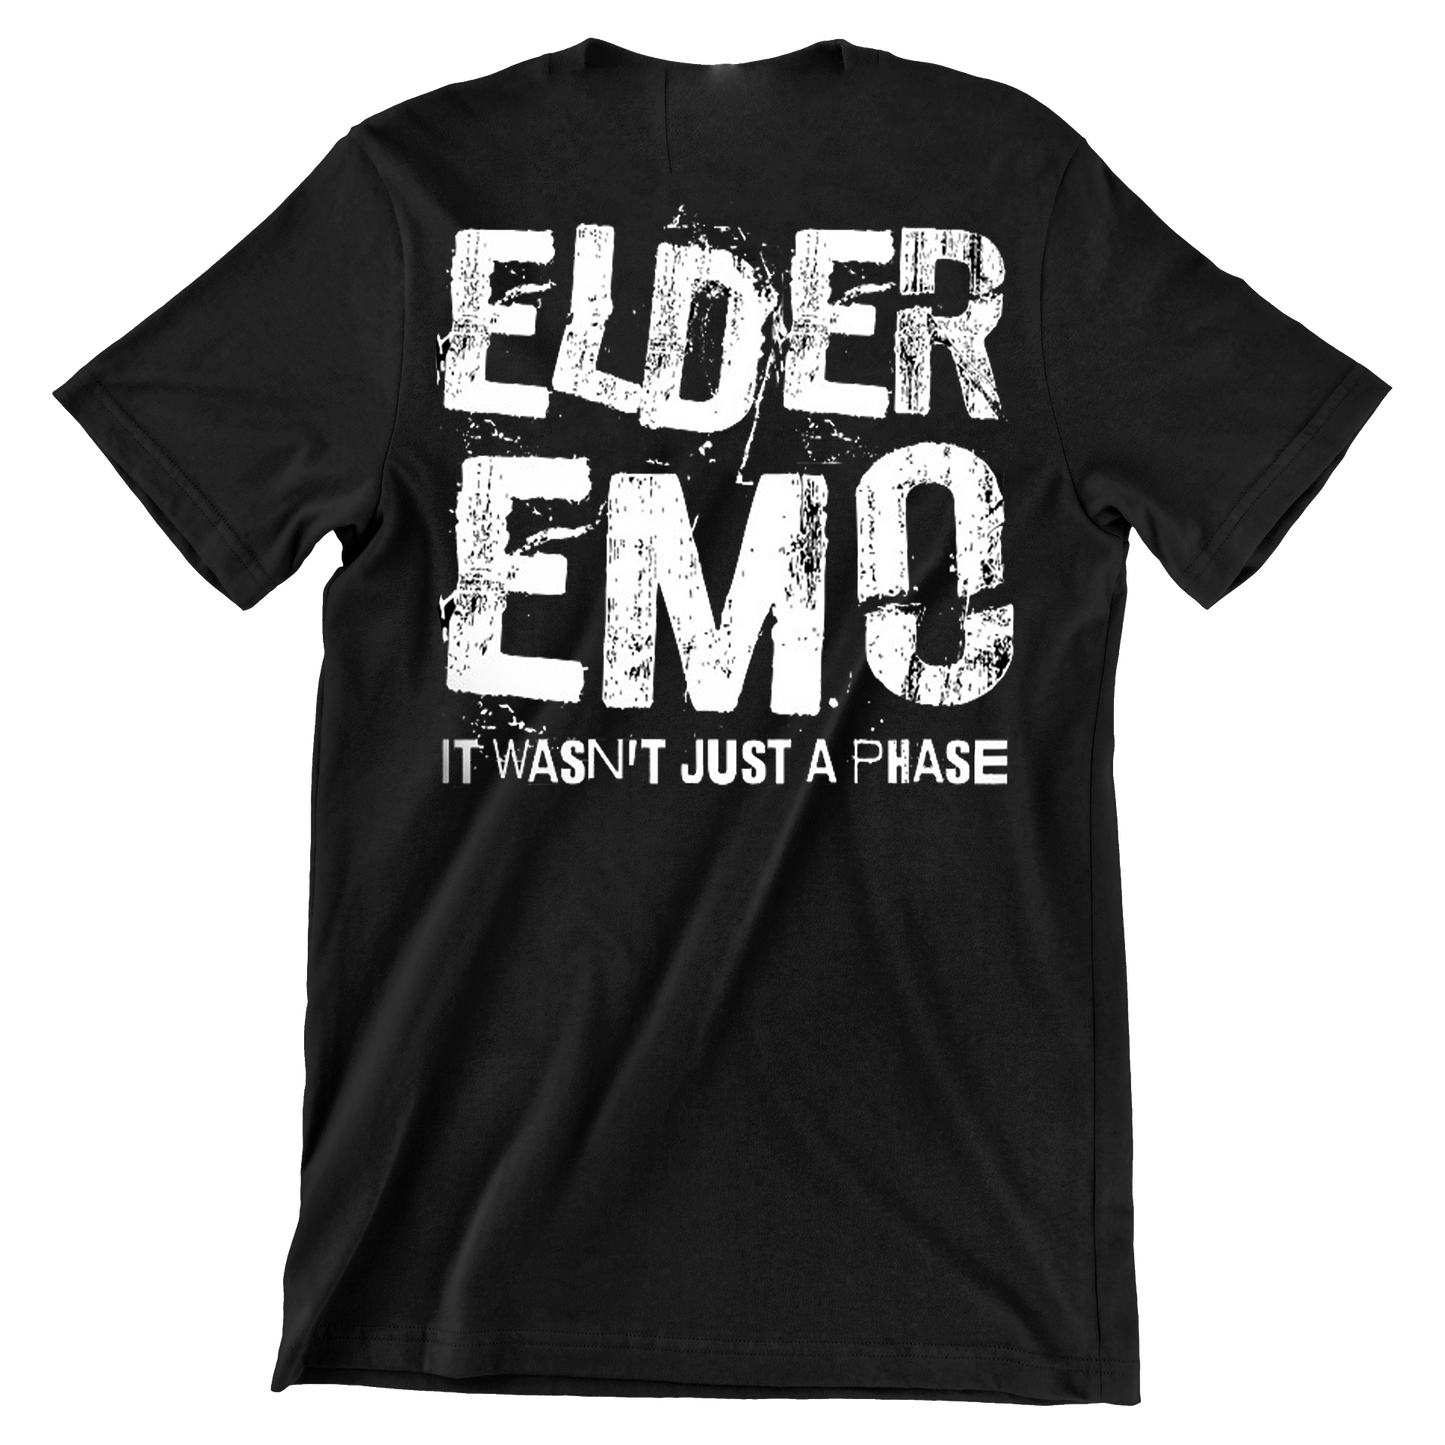 Elder Emo